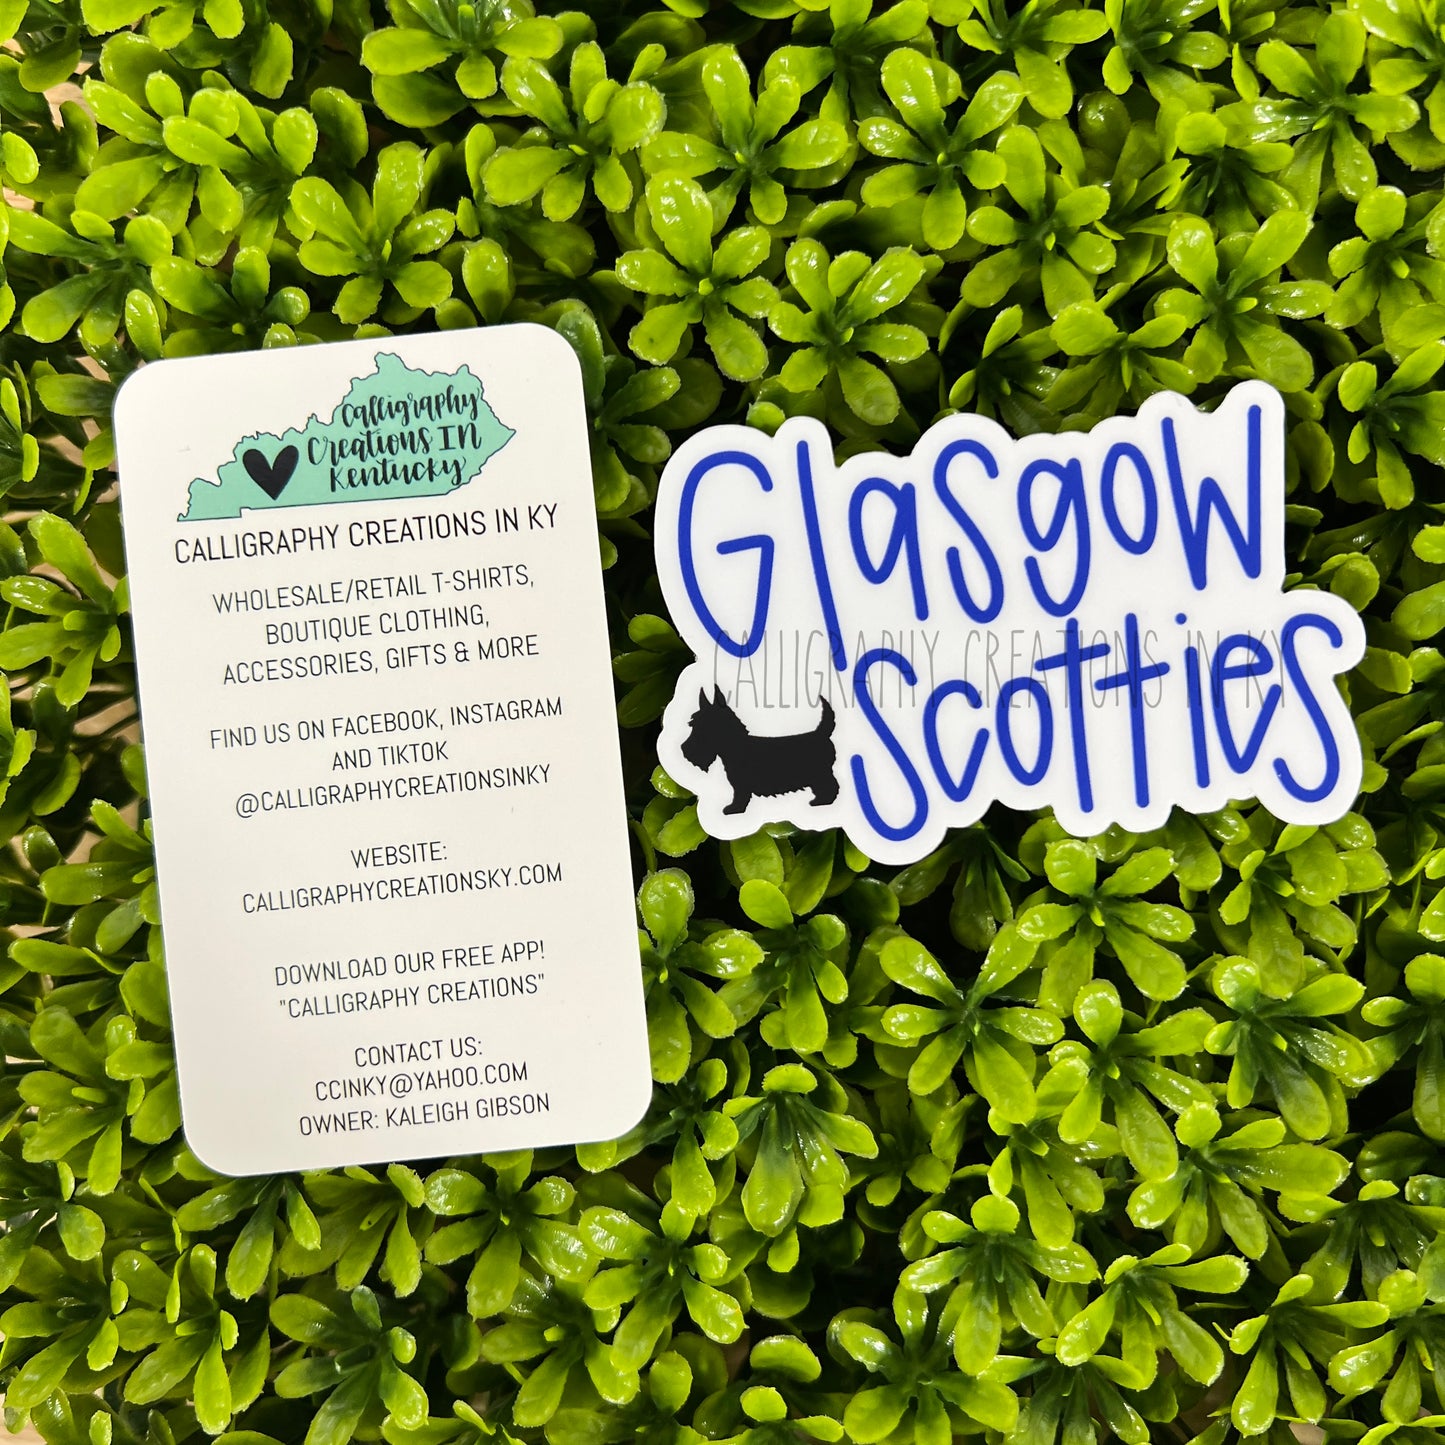 Hand-Lettered Glasgow Scotties Sticker